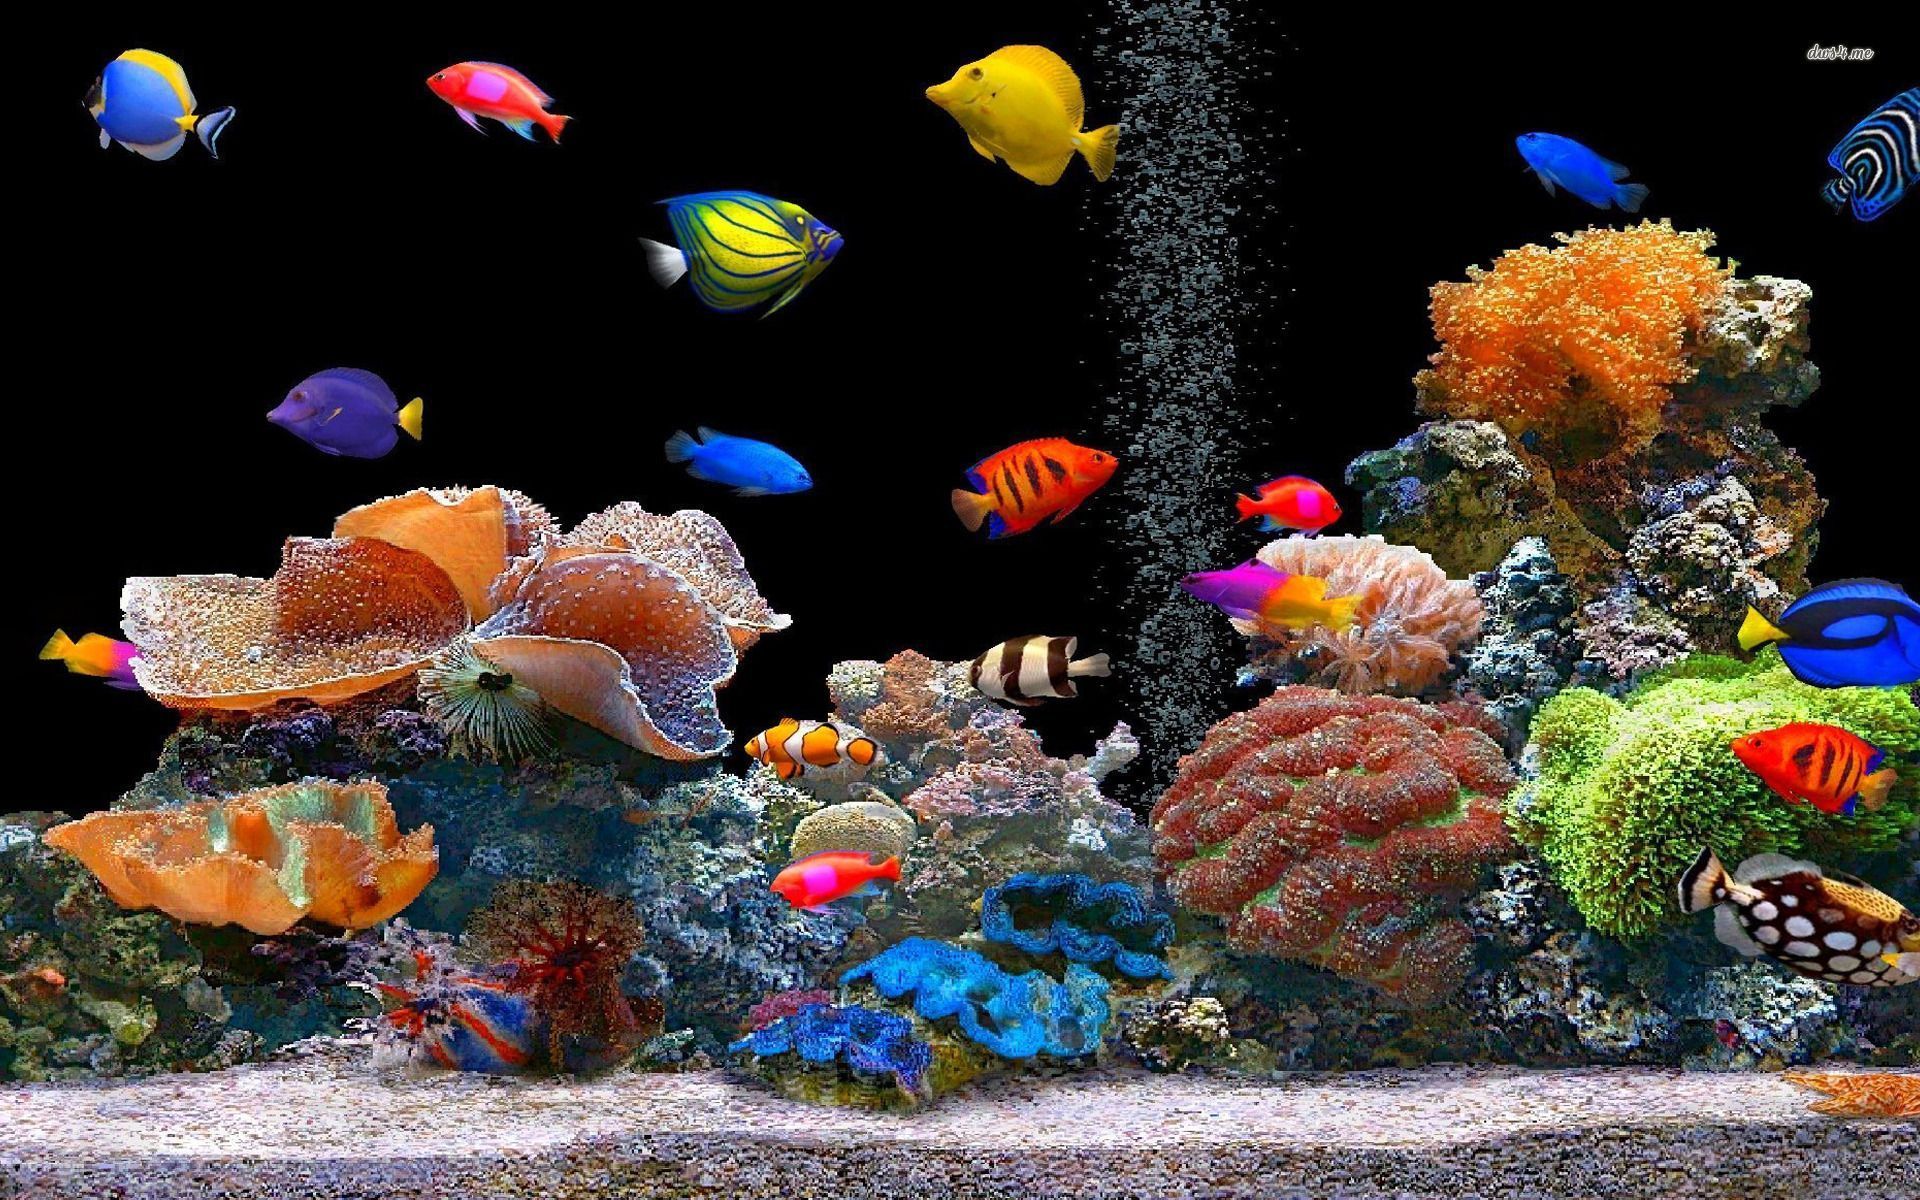 Tropical fish school wallpaper Wallpaper Wide HD